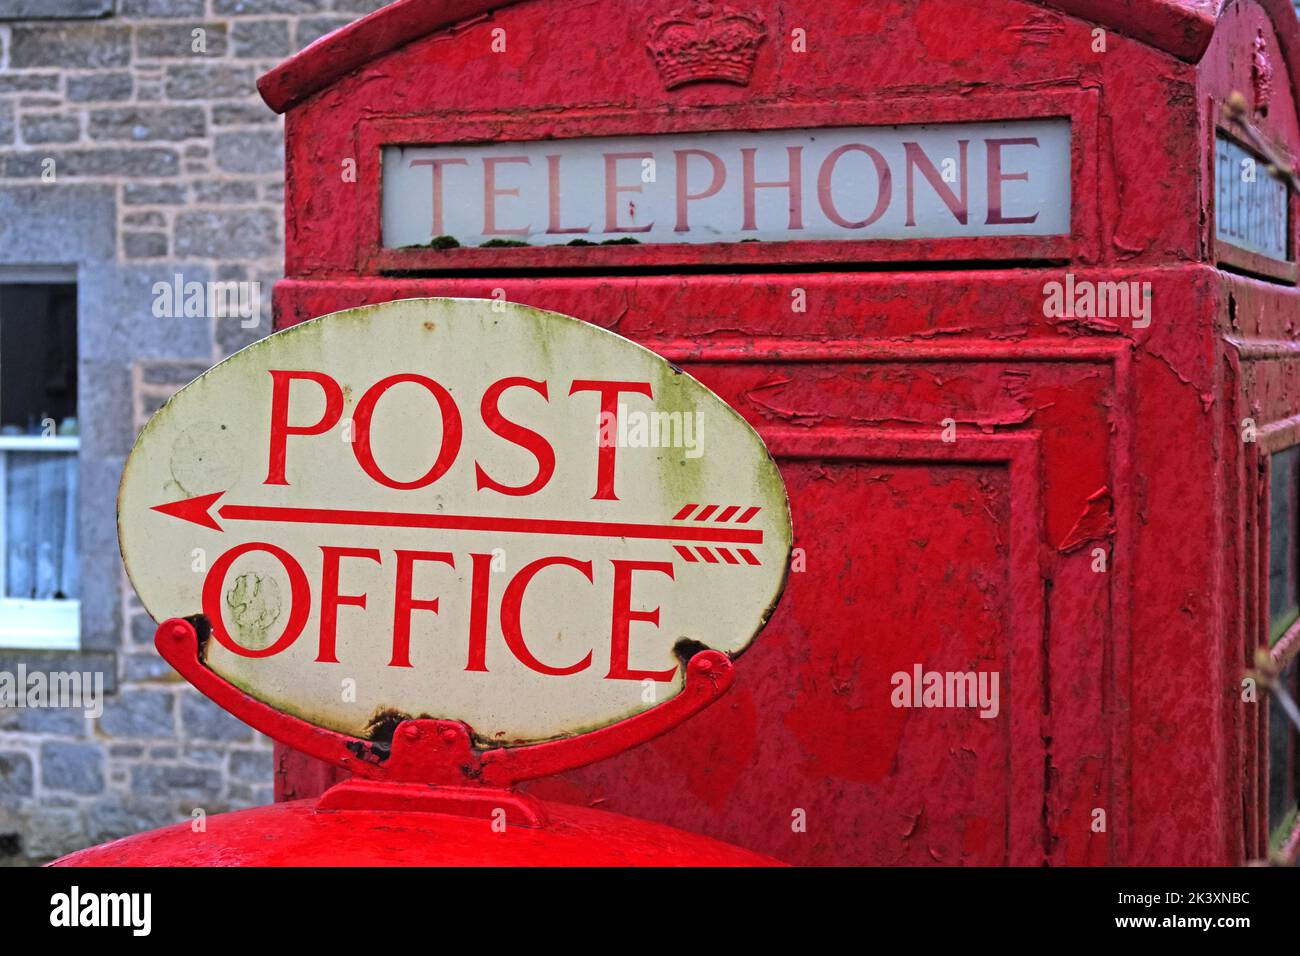 Caja de teléfono británica roja y cartel de la oficina de correos, Foto de stock